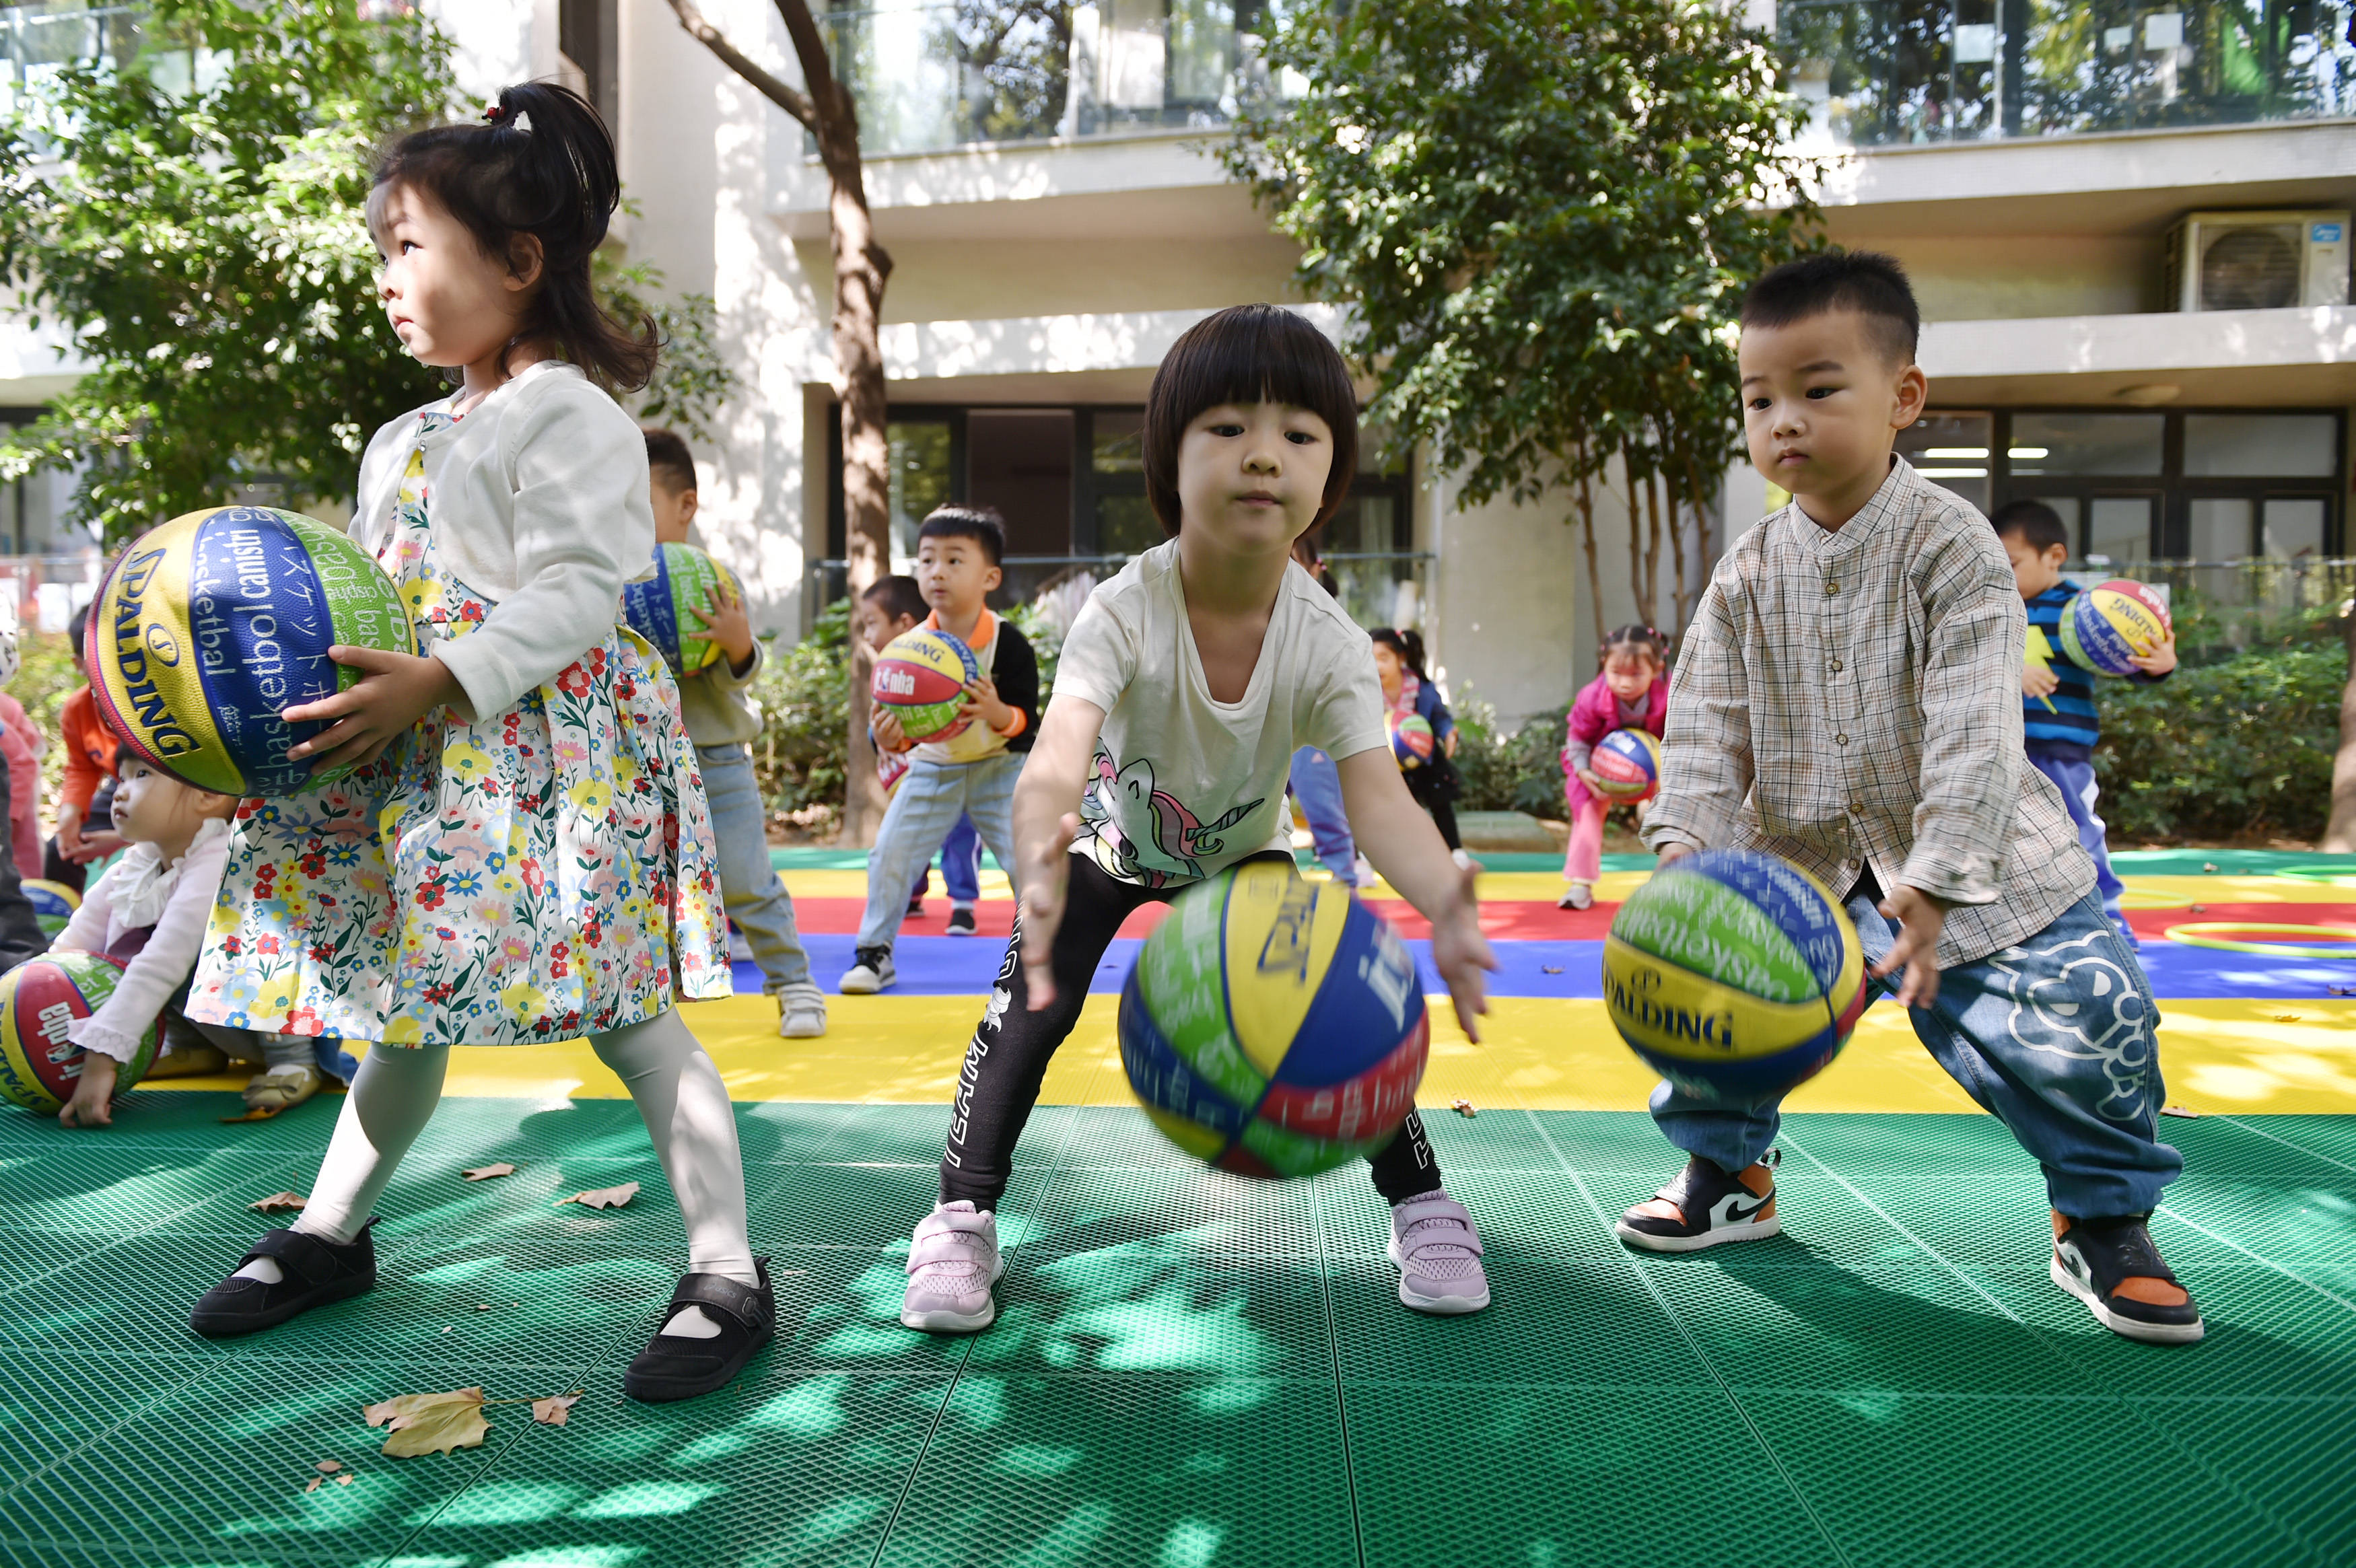 江苏南京:校园里的多彩运动